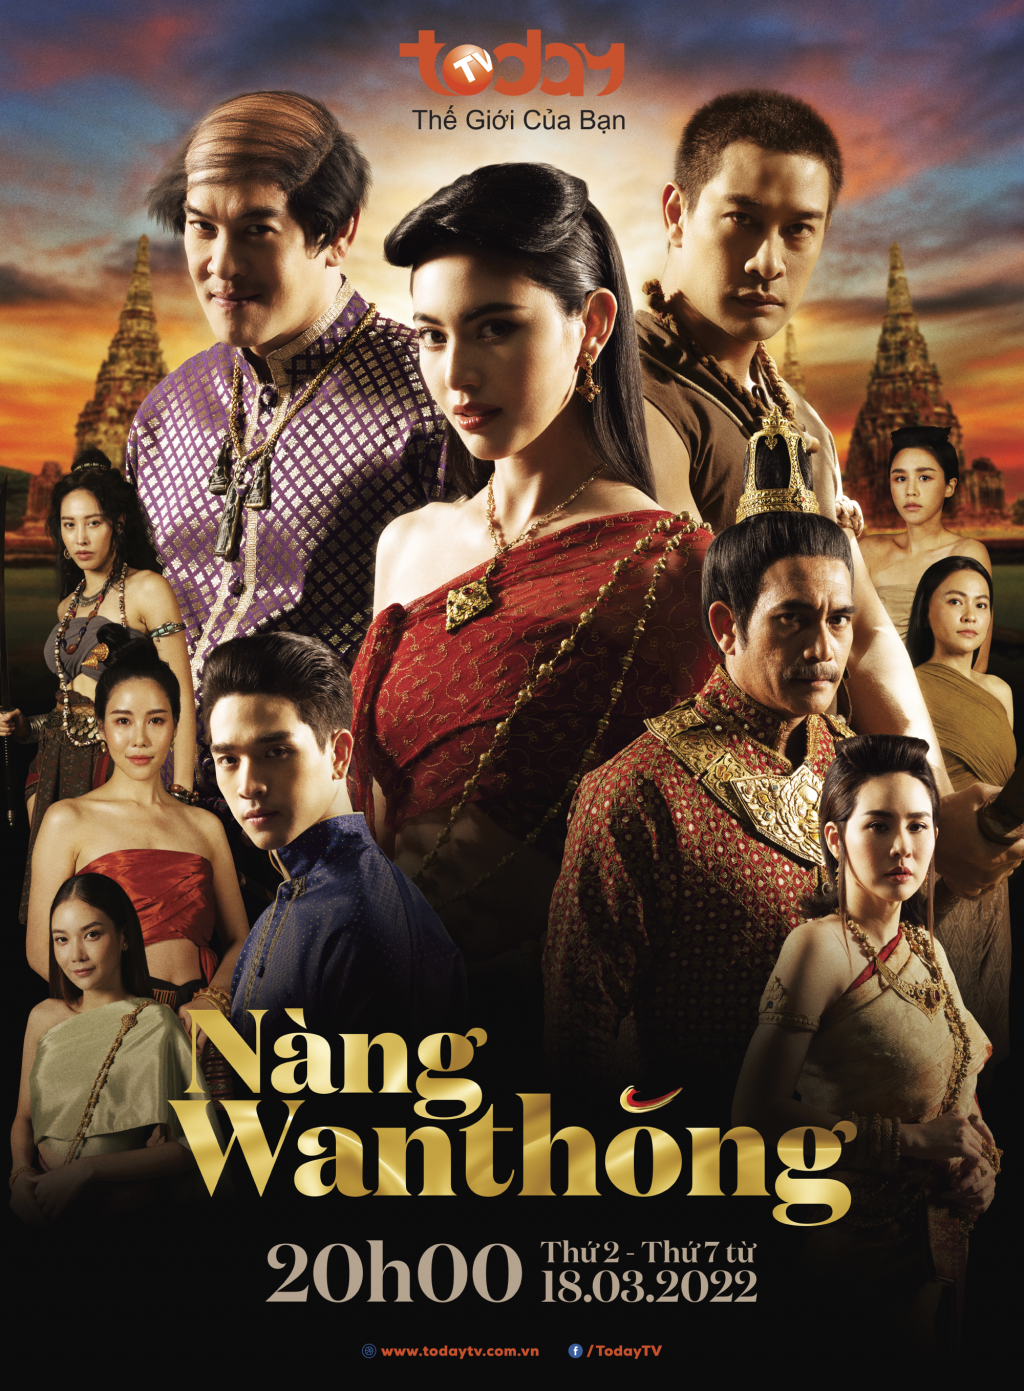 Wantong: Một biểu tượng của cuộc đấu tranh giành quyền bình đẳng của phụ nữ Thái Lan